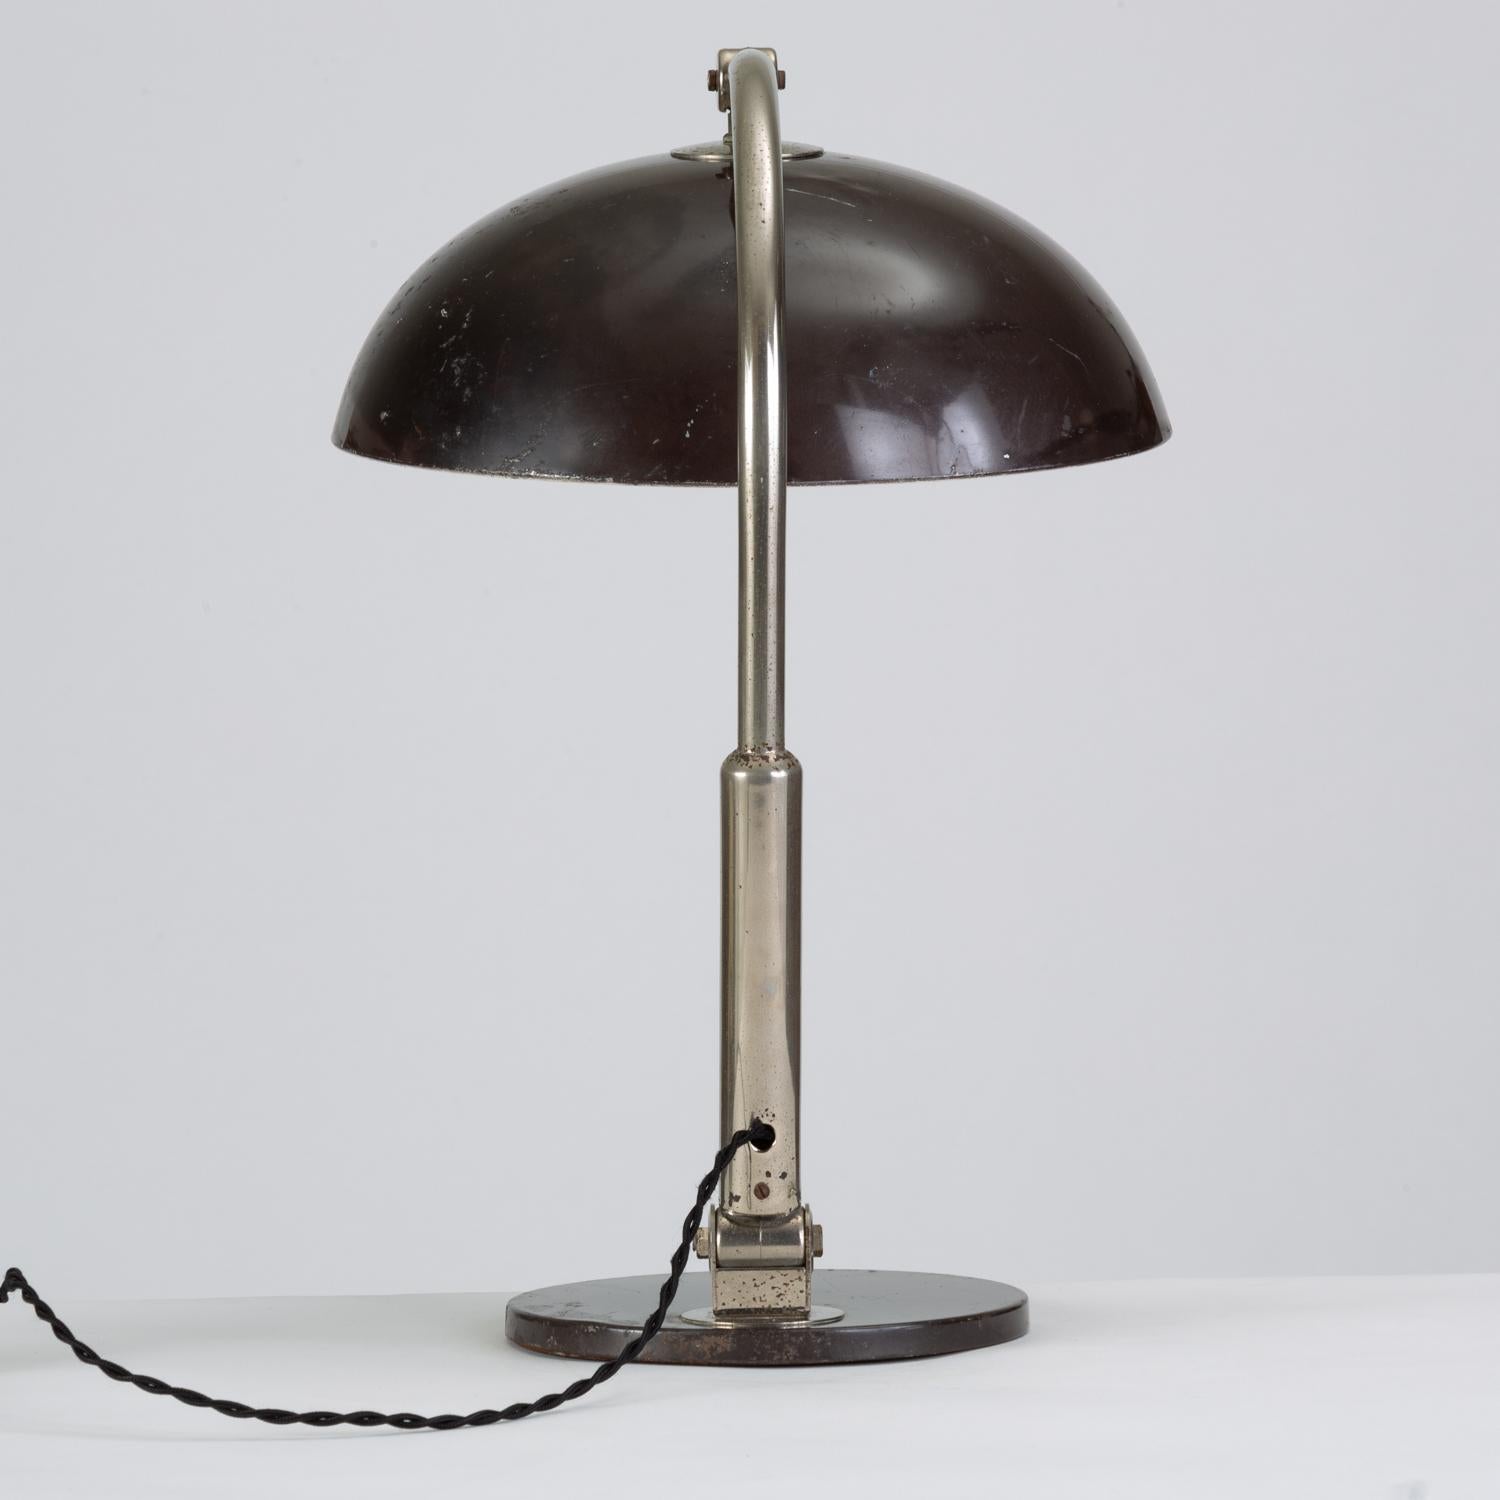 Enameled Dutch Modern Model 144 Desk Lamp by Herman Busquet for Hala